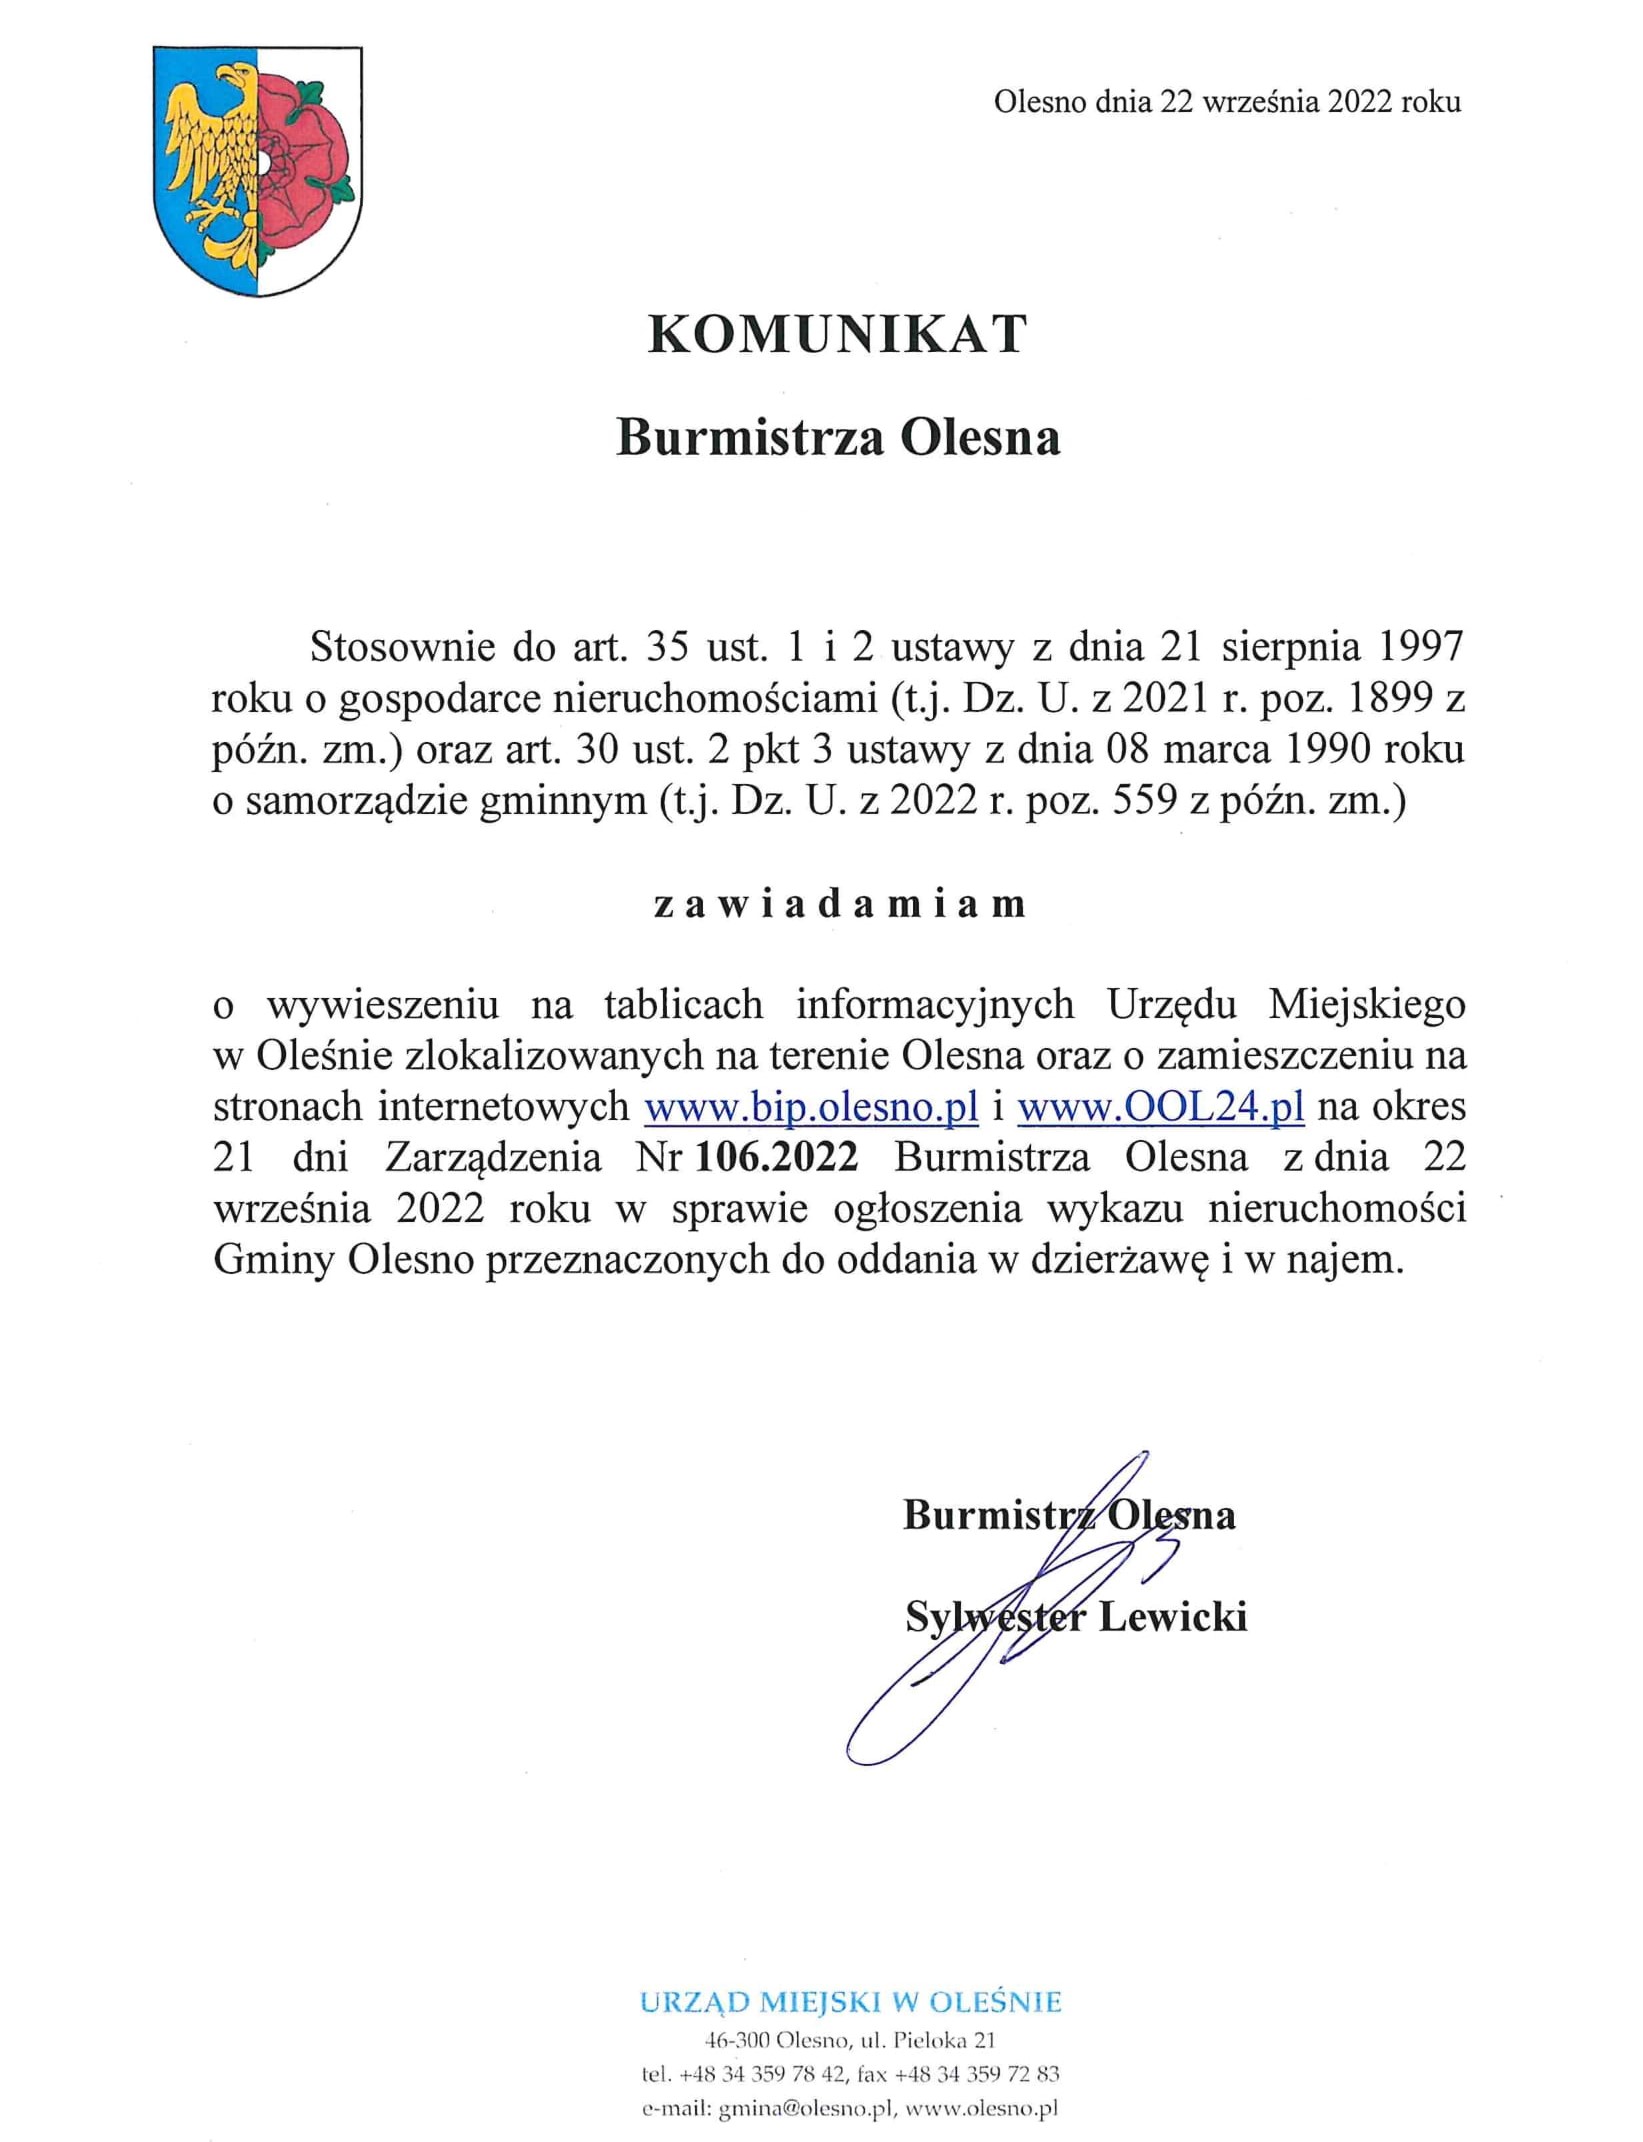 komunikat-burmistrza-olesna-zarzadzenie-nr-106-2022-do-publikacji-1